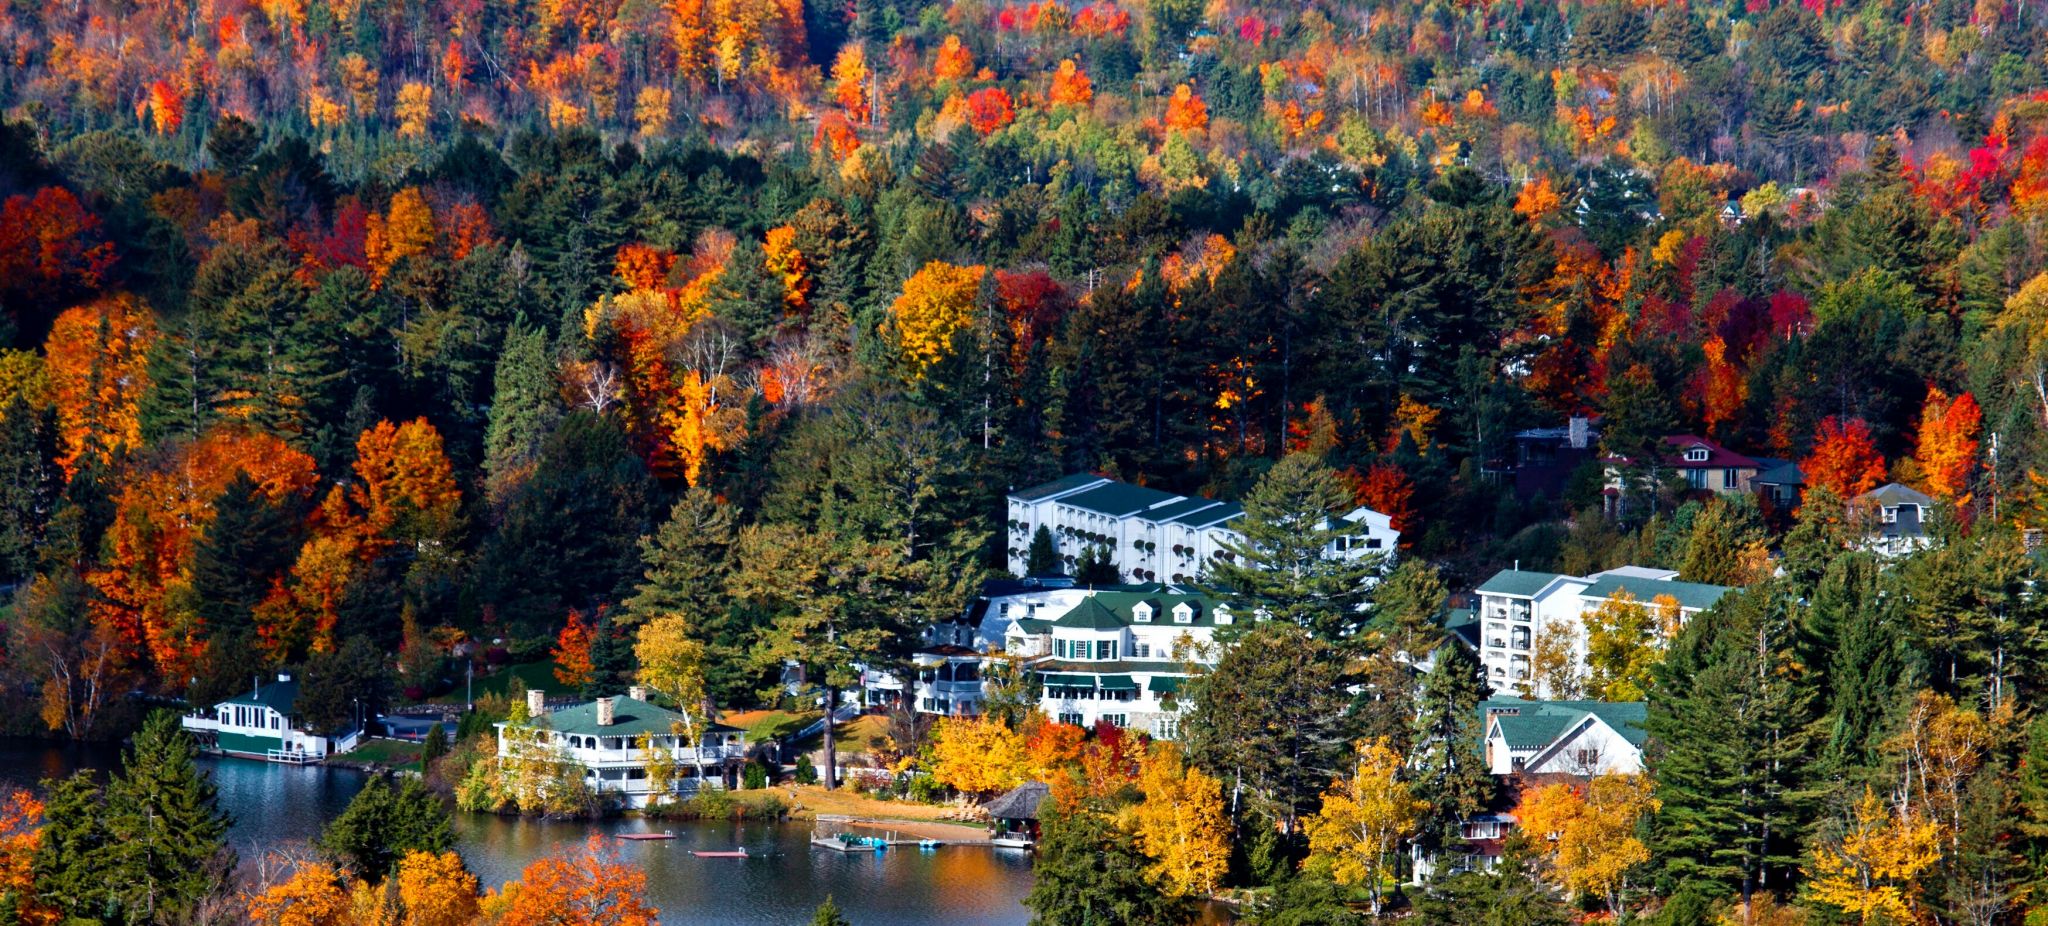 Fall Foliage at Mirror Lake Inn Resort and Spa on Lake Placid